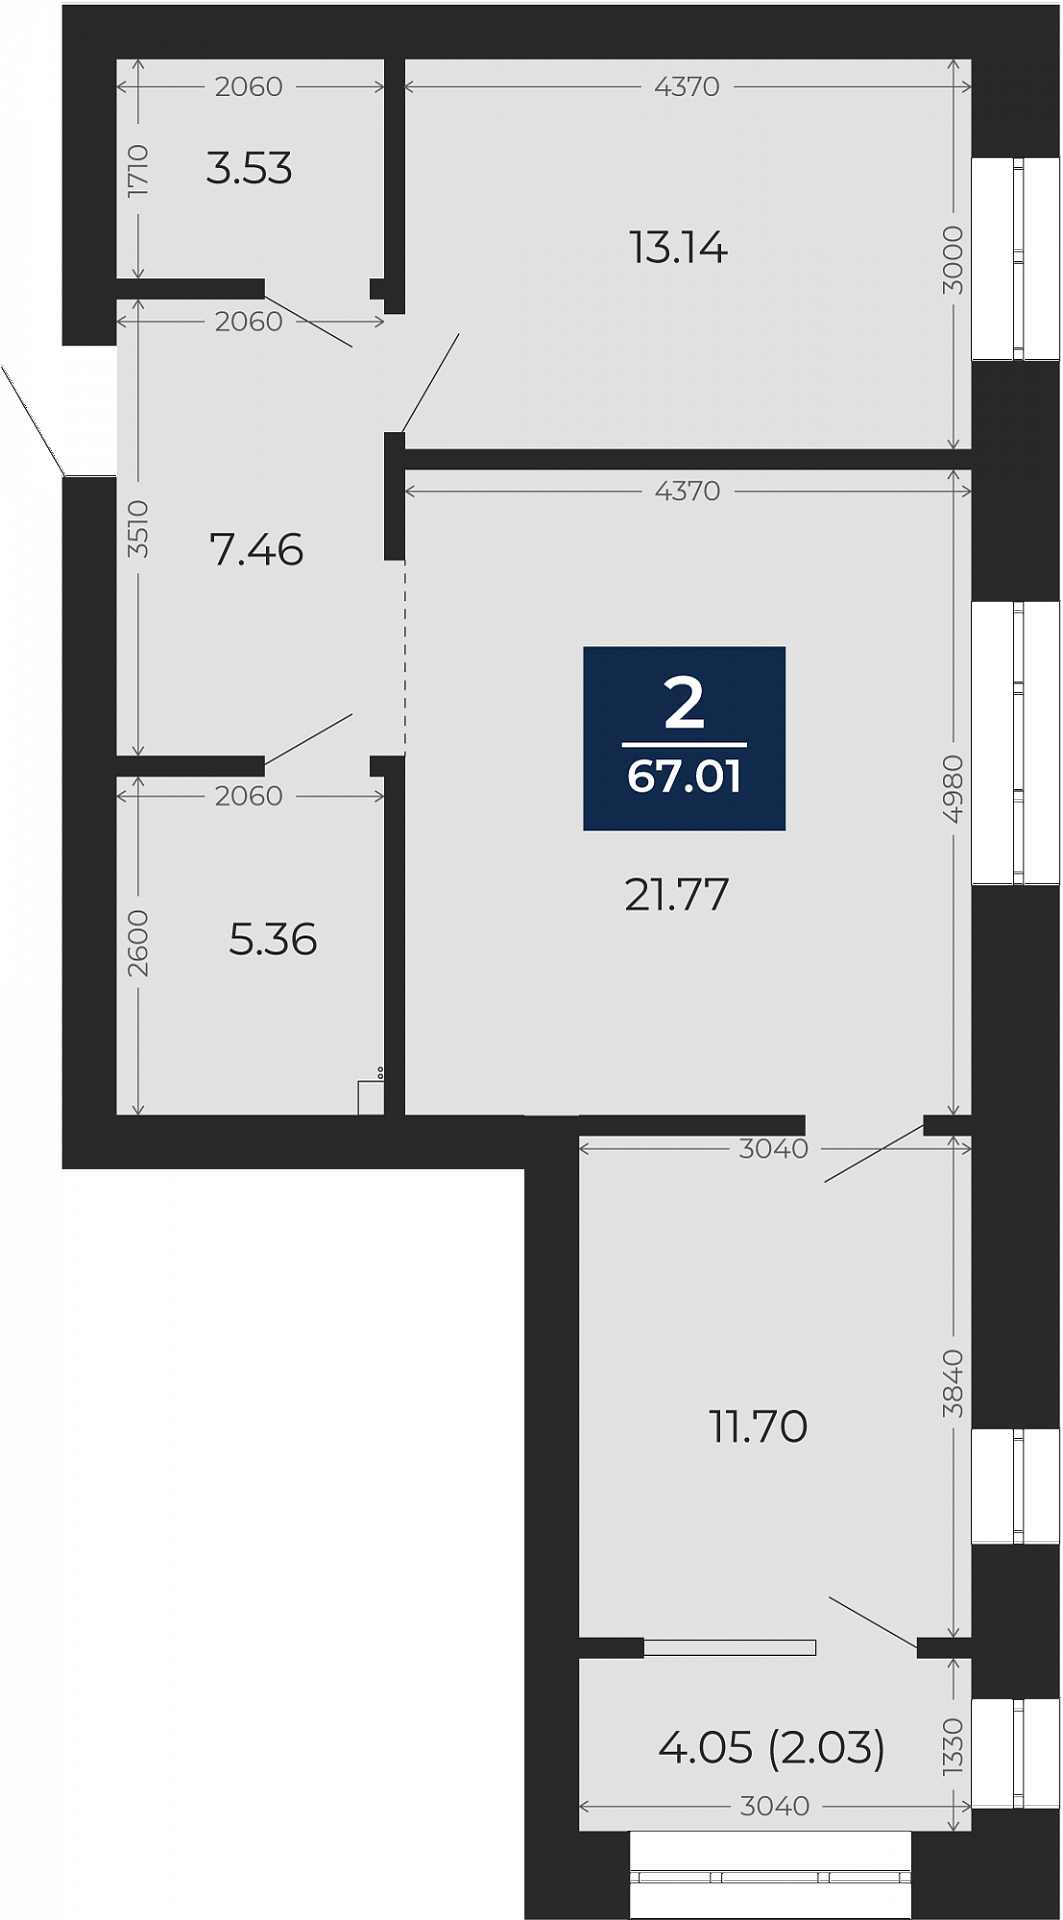 Квартира № 170, 2-комнатная, 67.01 кв. м, 9 этаж